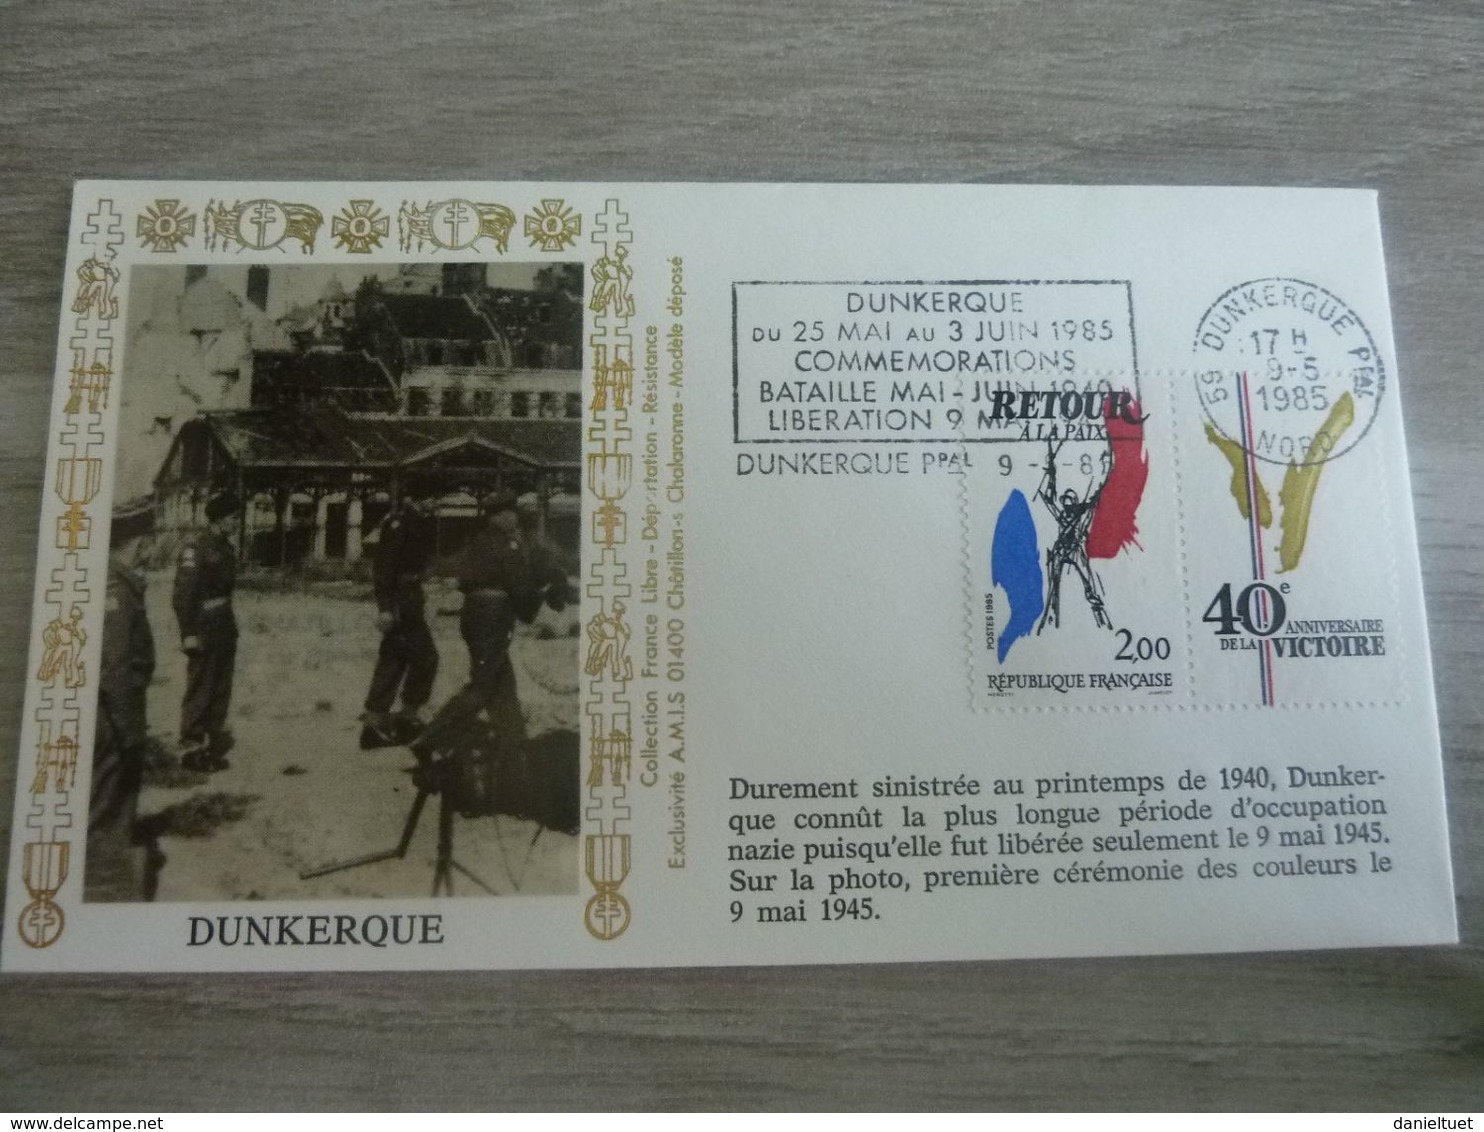 Dunkerque - Commémorations De La Bataille Mai Et Juin 1940 - Editions Amis - Année 1985 - - Usati